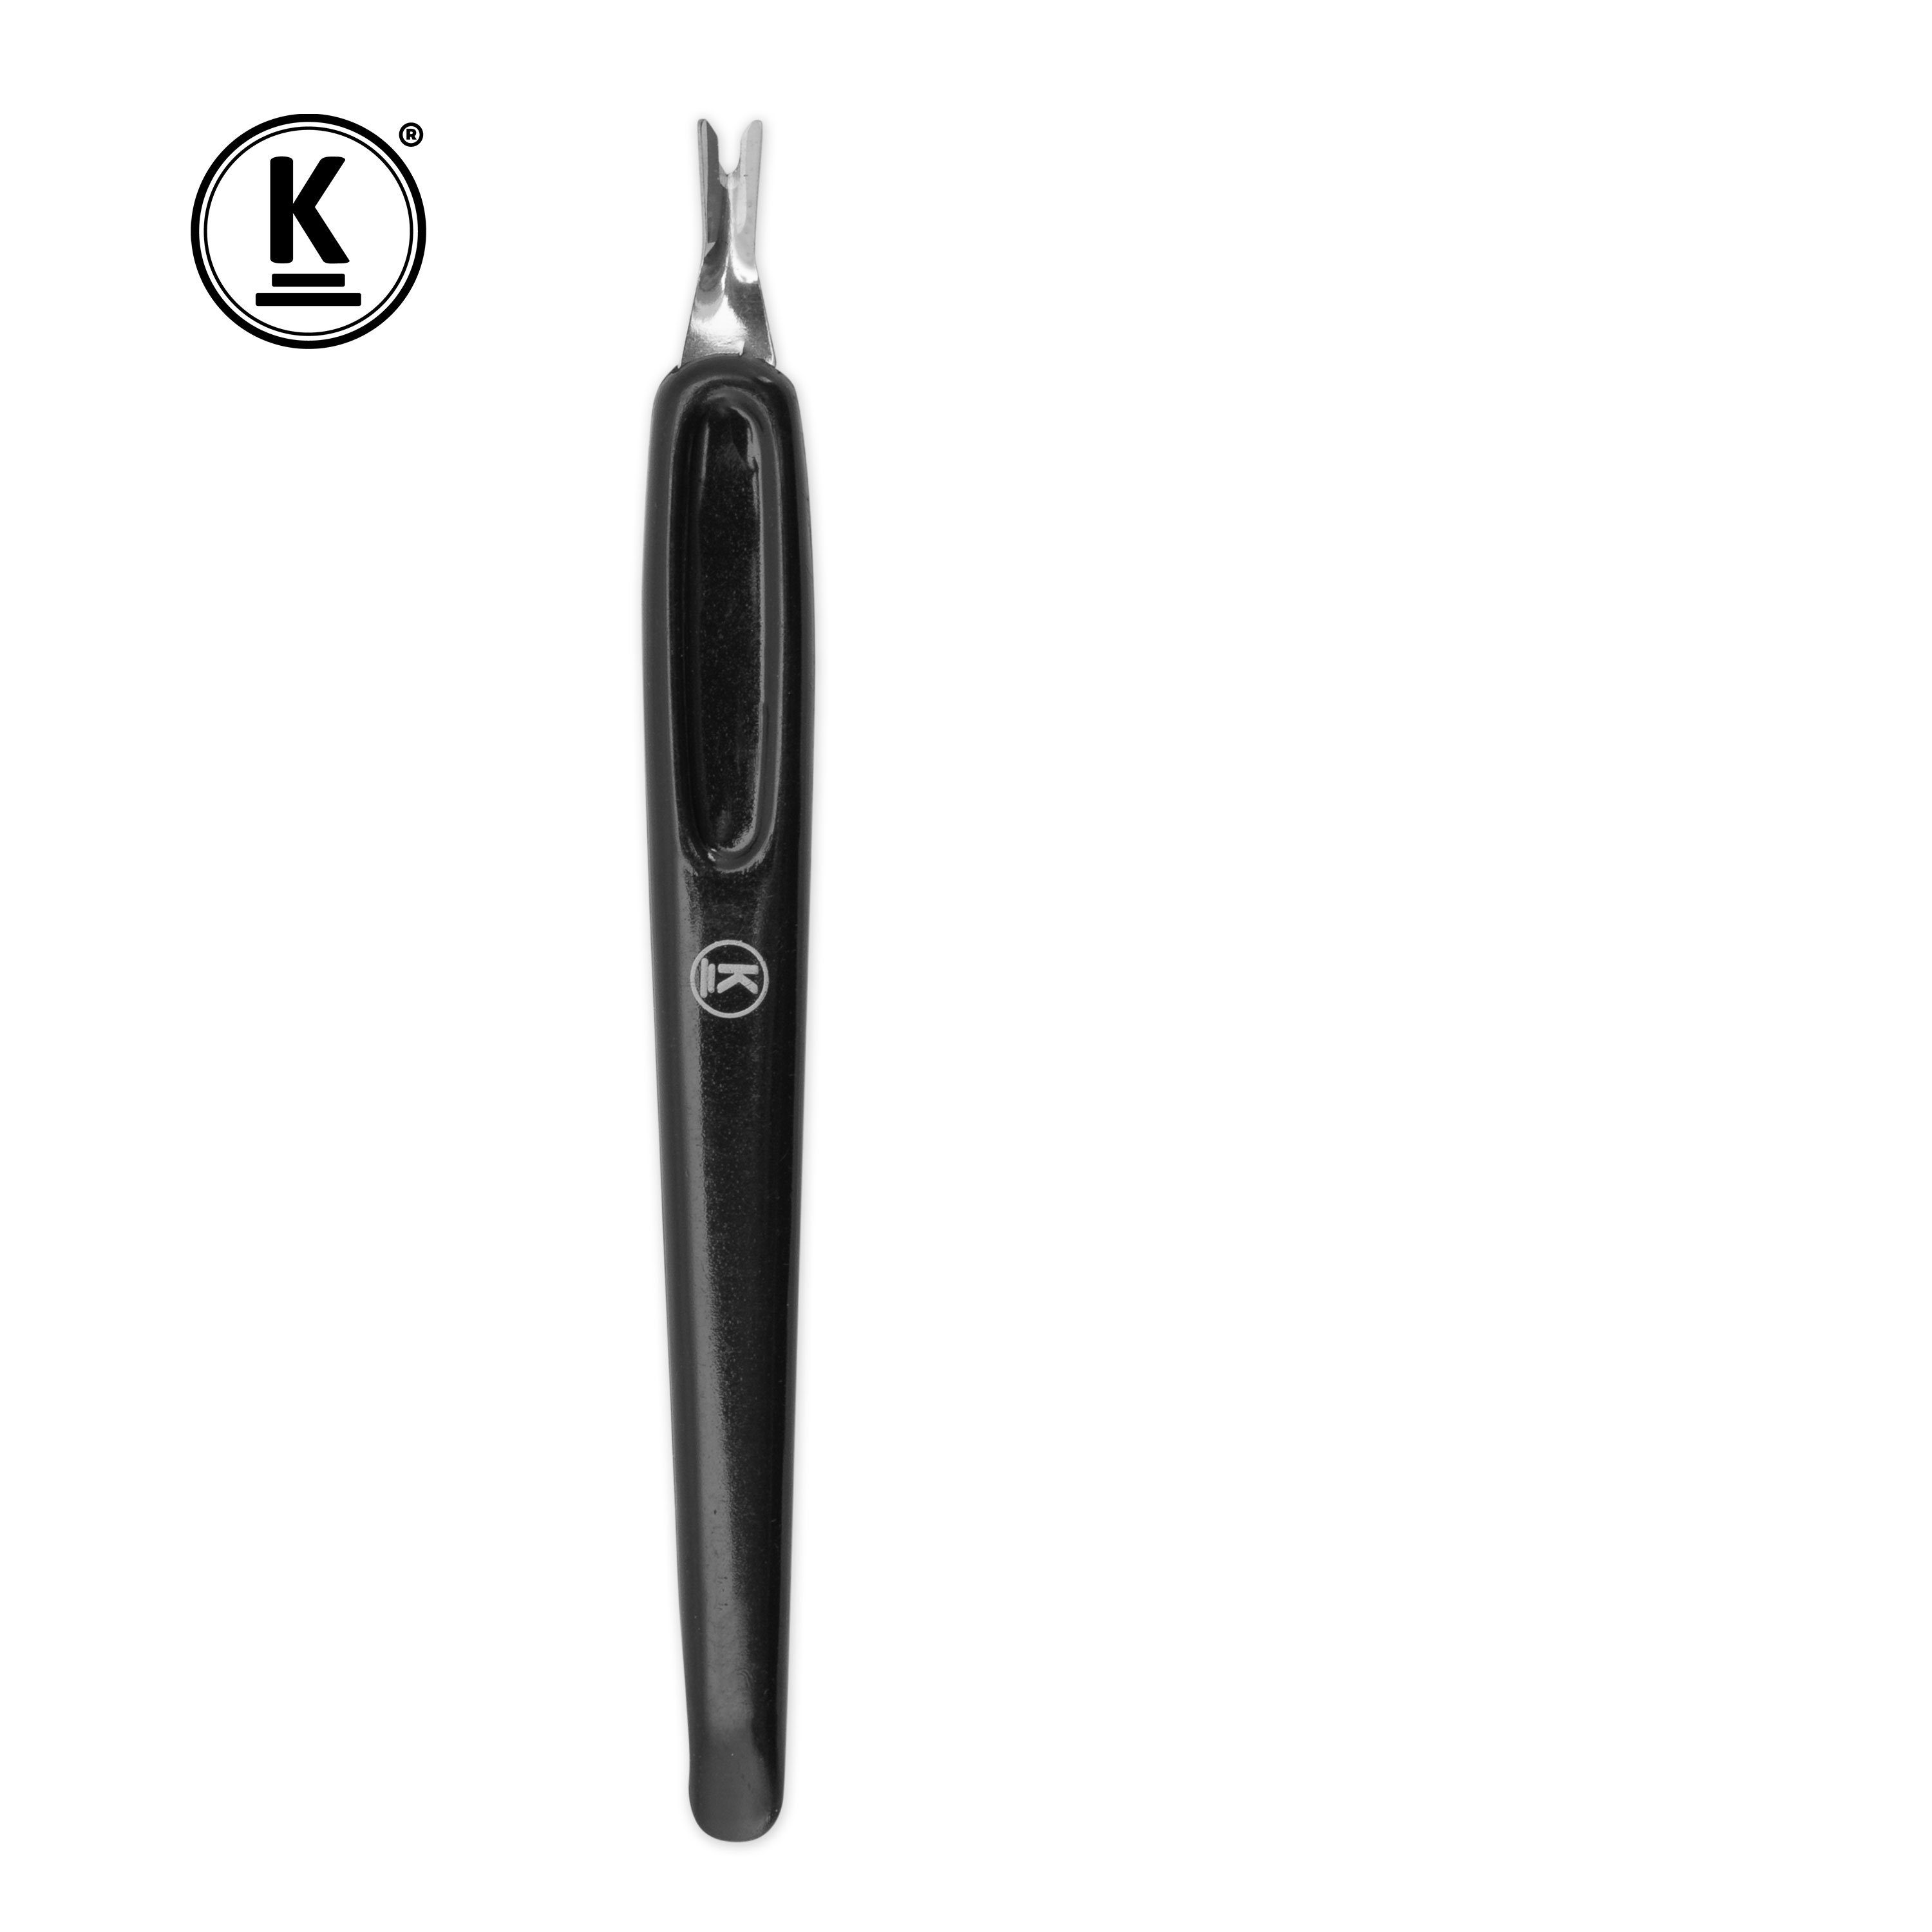 K-Pro Nagelhautmesser 24 - zum Entfernen Nagelhautentferner Nagelhaut der Stck. - Cutter